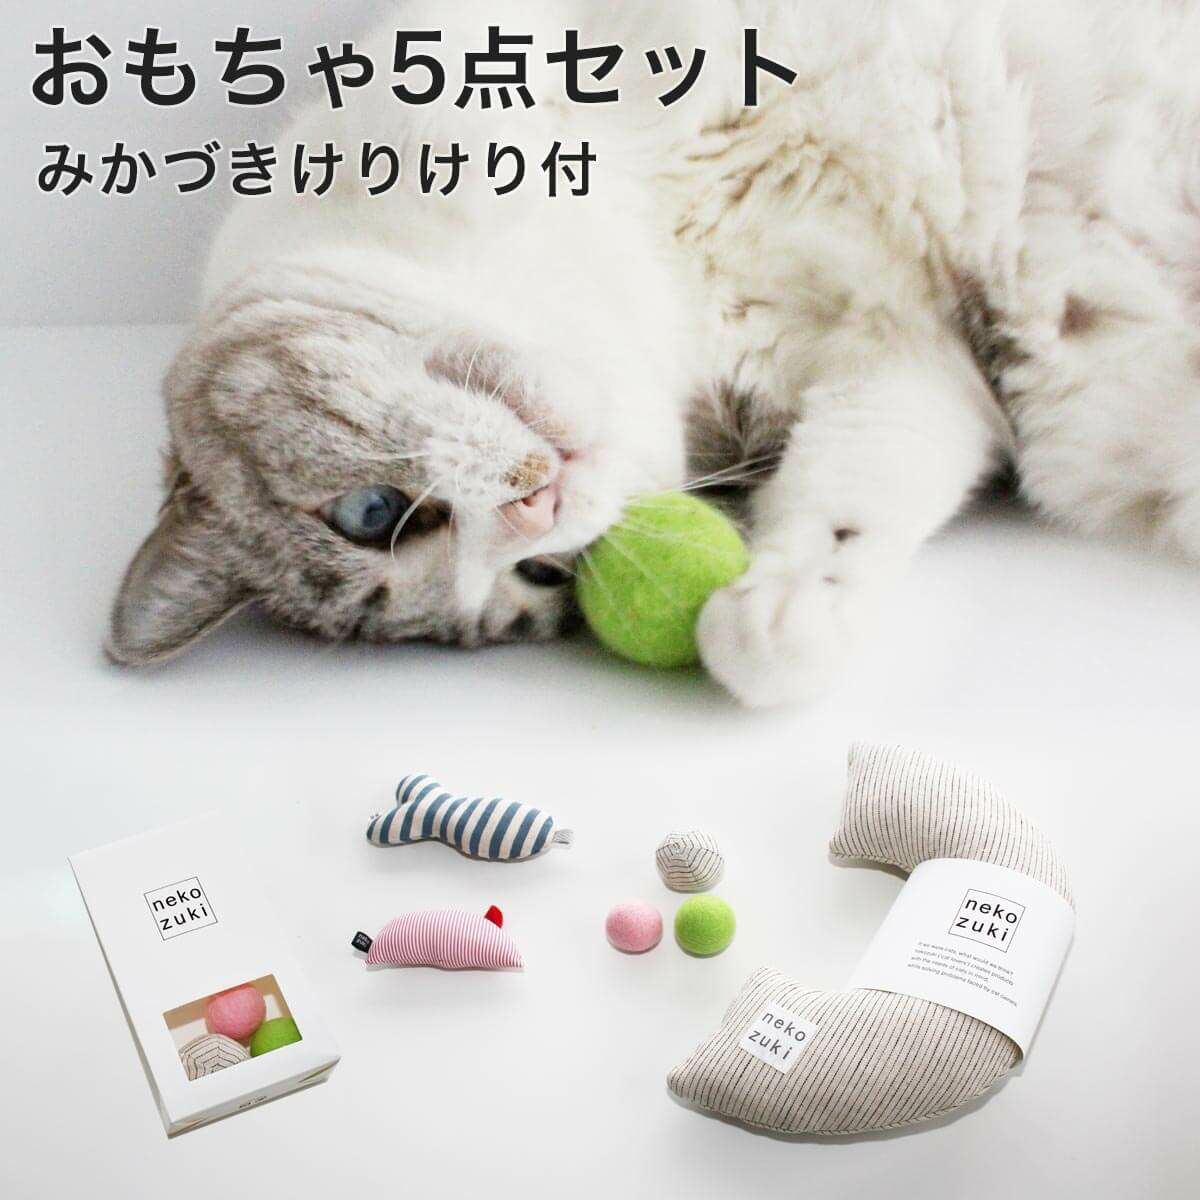 人気の日本製猫おもちゃ5点セット。遊び比べやギフトにおすすめ